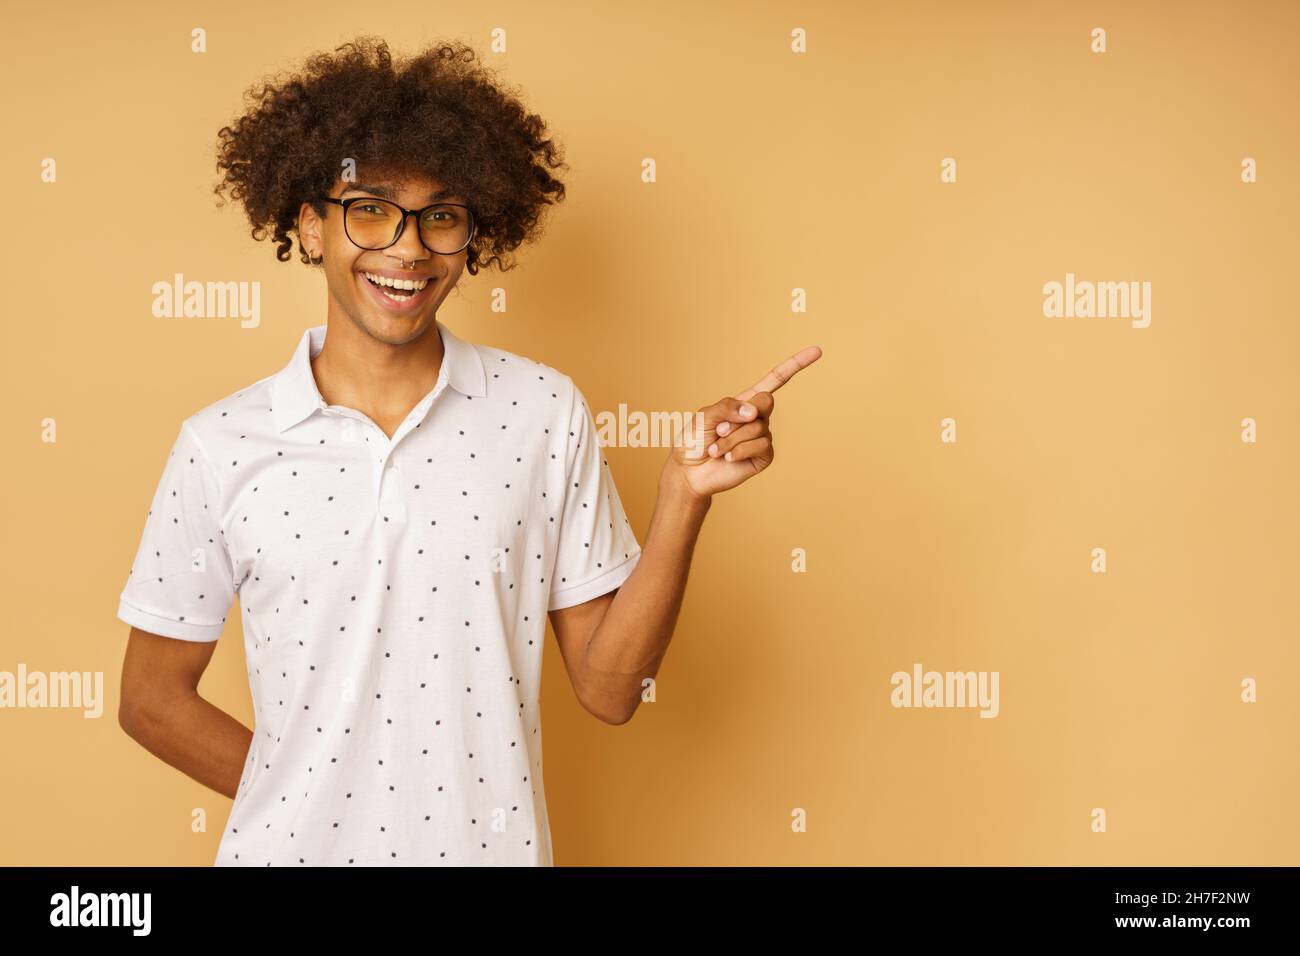 Un hombre feliz con gafas indica algo con la mano Foto de stock